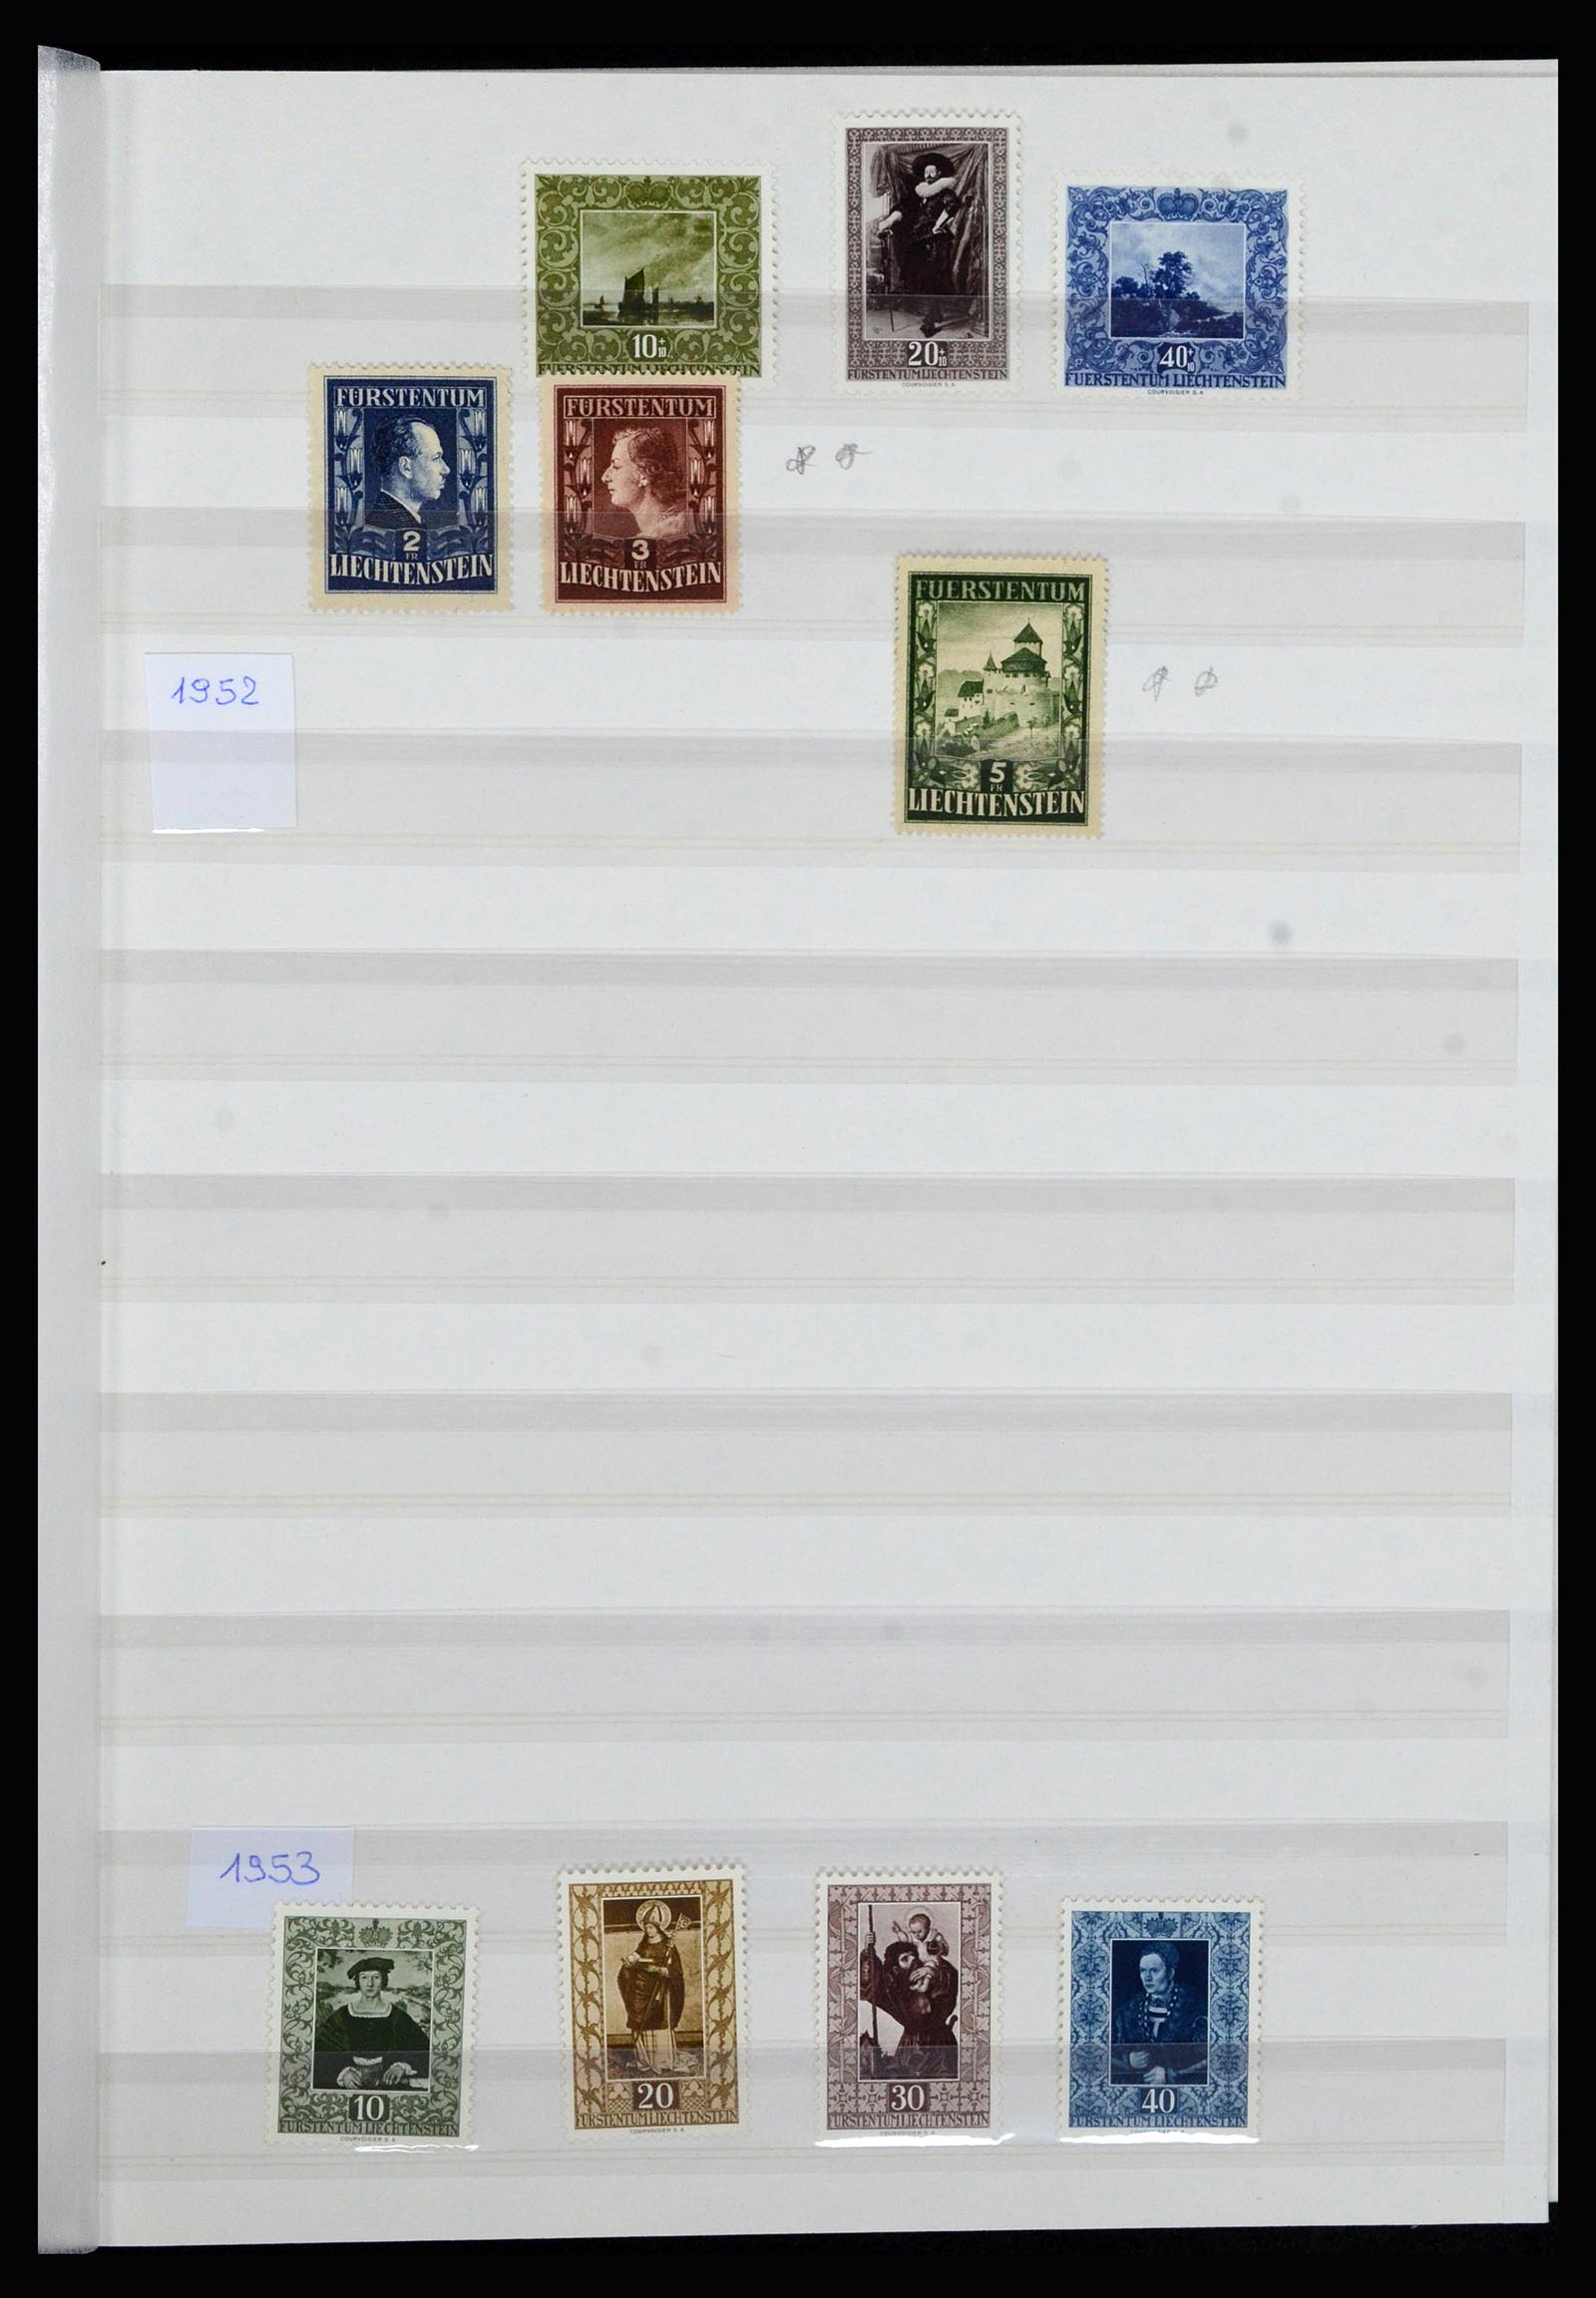 36899 008 - Stamp collection 36899 Liechtenstein 1930-2005.